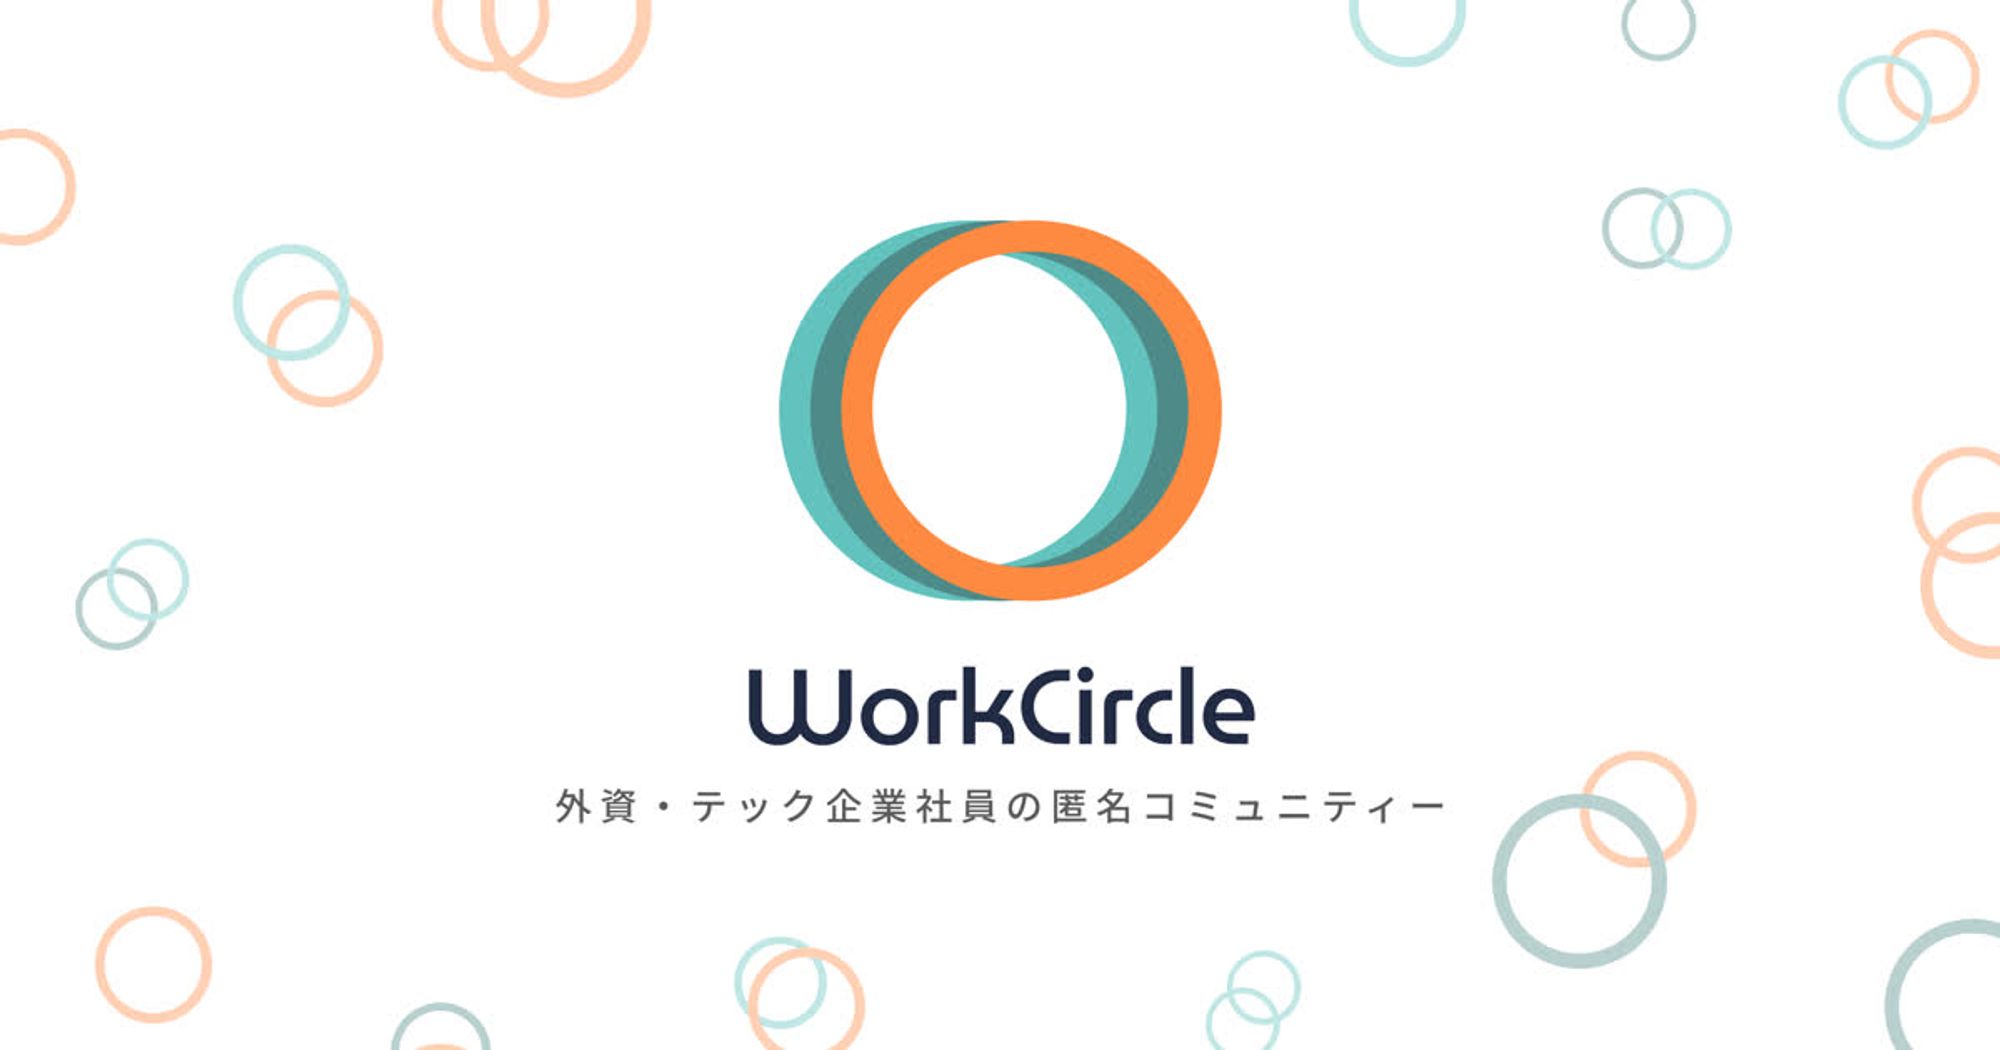 WorkCircle（ワークサークル）は、外資系・テック企業の社員が繋がり、キャリアについて議論する匿名コミュニティです。会社や業界の垣根を超えたユーザーとオープンにコミュニケーションを取れるテックラウンジや社員専用のプライベートサークルを用意しました。WorkCircleは社員同士が率直な意見を提供しあうことで、企業文化を向上させ、新たなキャリア情報を発見する場所です。